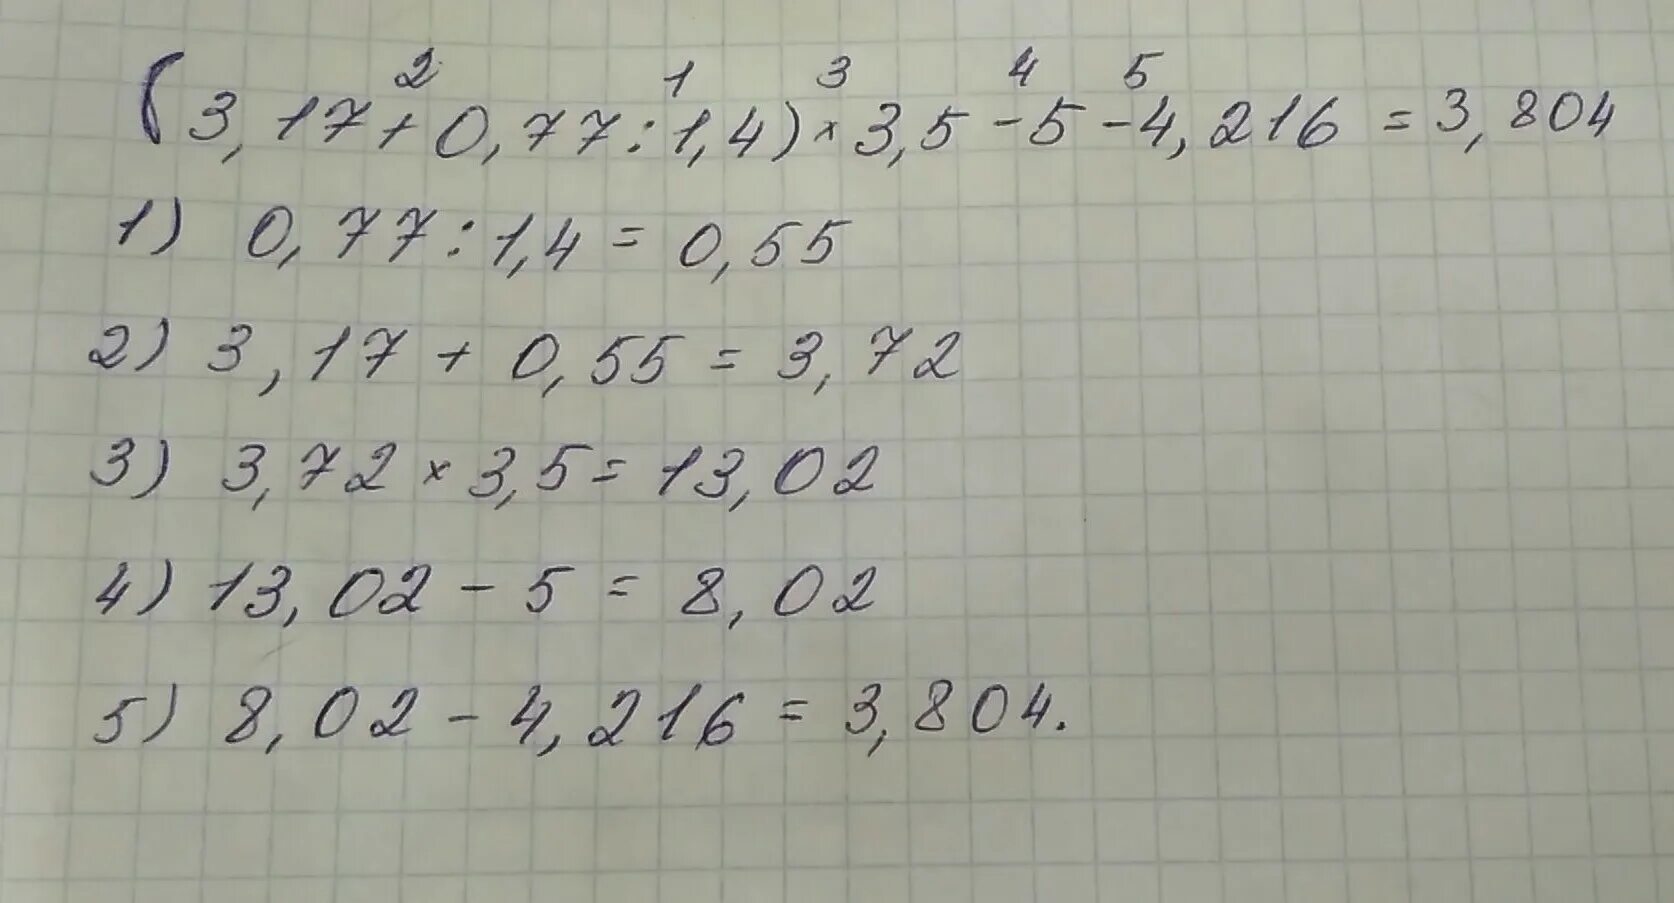 0.5 4.0. (3,17+0,77:1,4)*3,5-4,216. Найдите значение выражения 3 17 0 77 1 4 3 5 4 216. (3,17+0,77:1,4)×3,5-4216 решение. -(0,77/1,4+3,17)*(-3,5 )=.